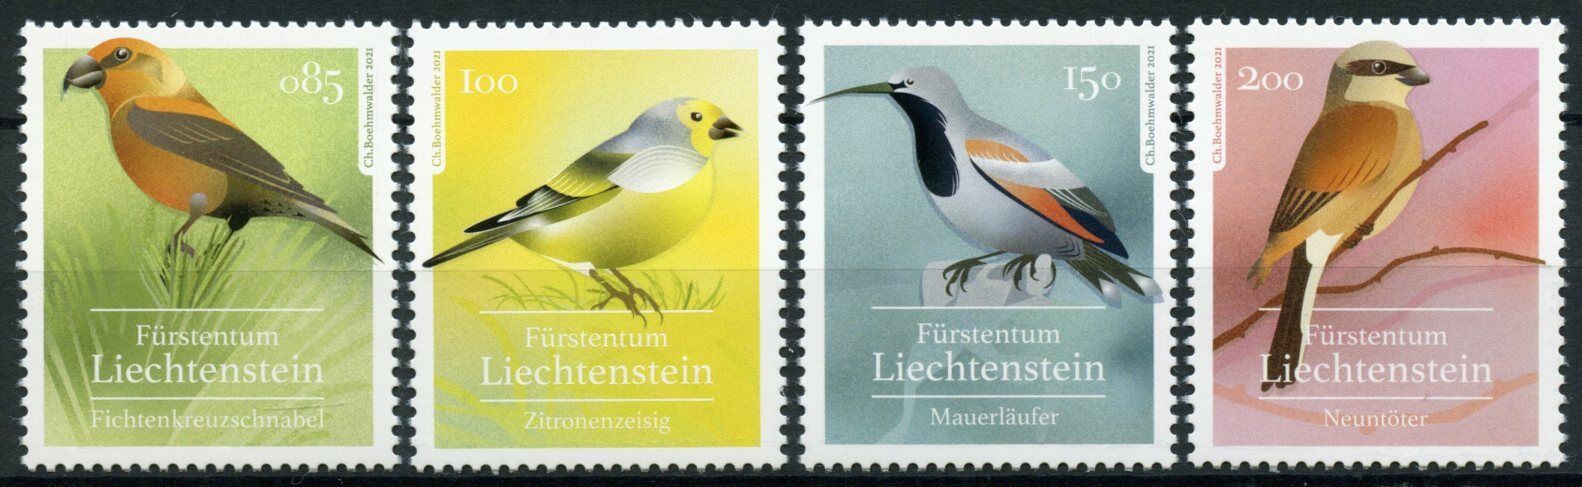 Liechtenstein Birds on Stamps 2021 MNH Native Songbirds Finches Shrikes 4v Set